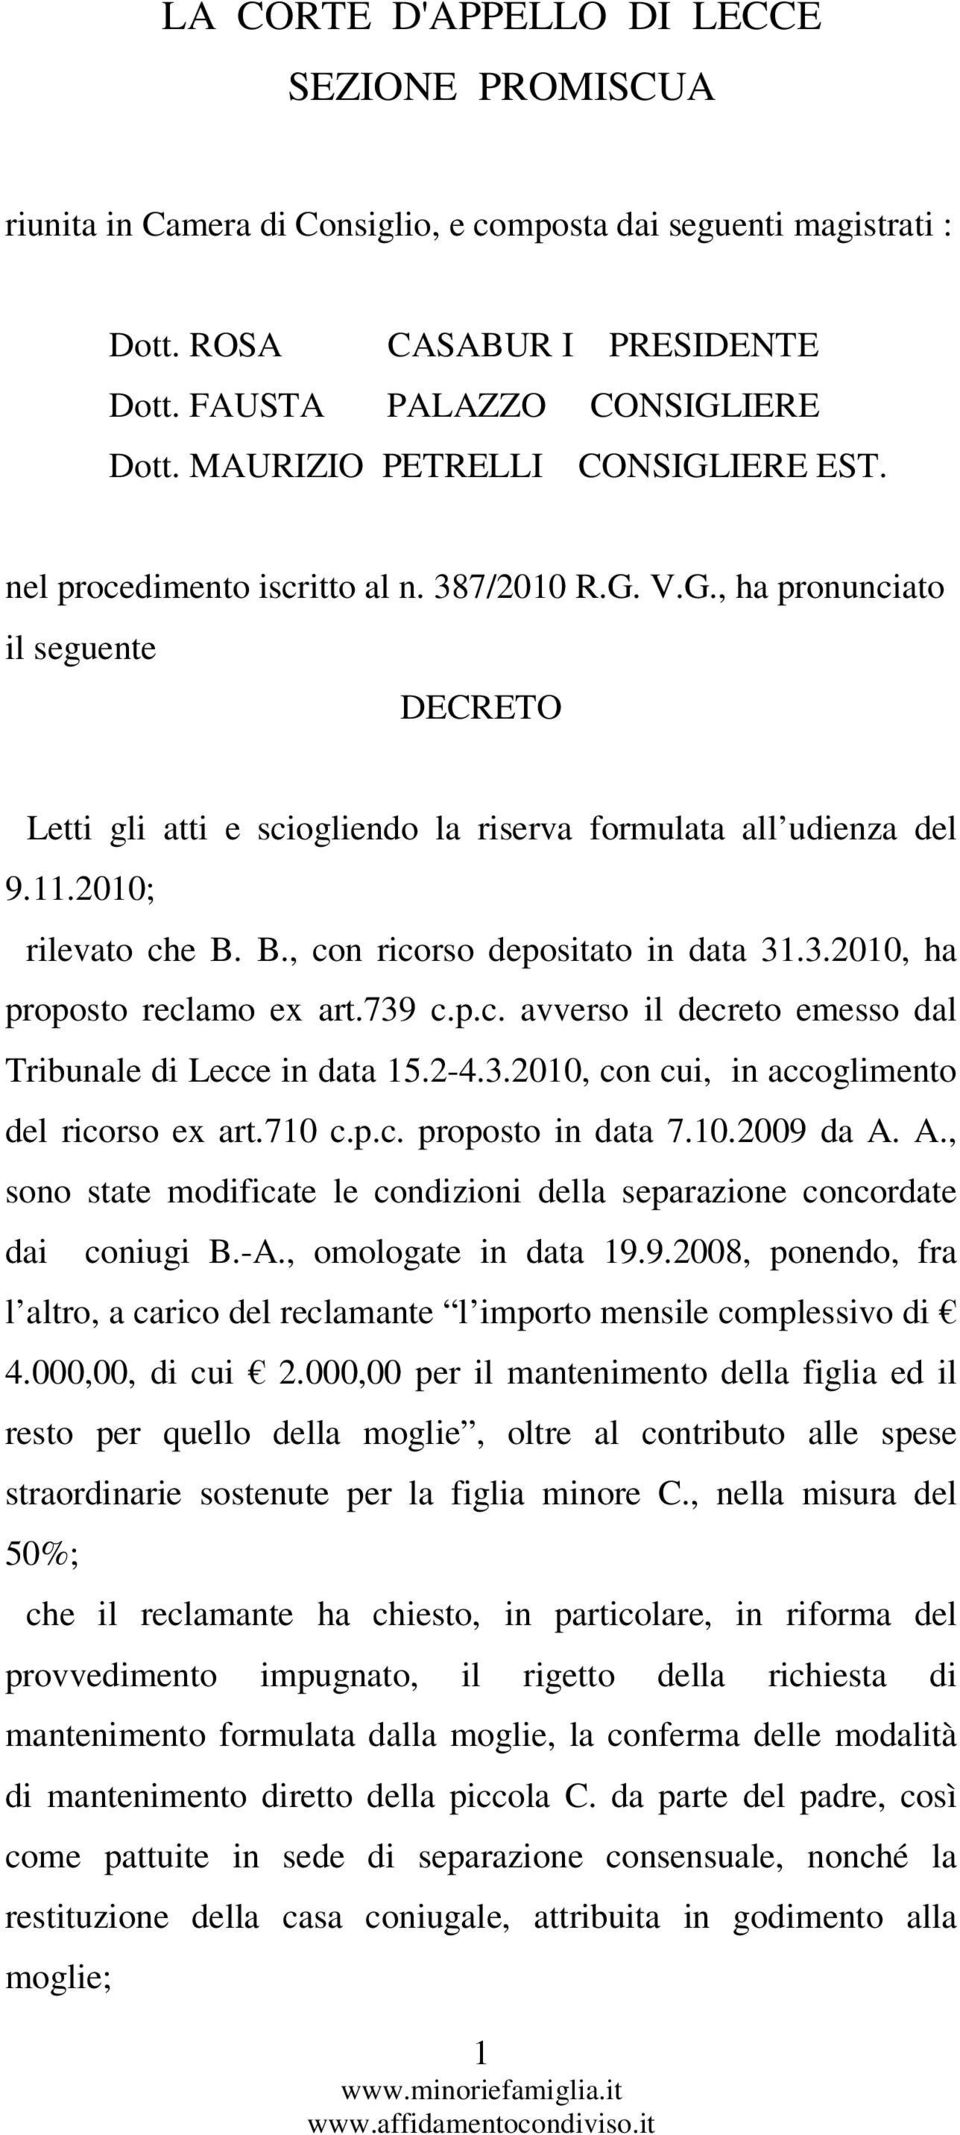 2010; rilevato che B. B., con ricorso depositato in data 31.3.2010, ha proposto reclamo ex art.739 c.p.c. avverso il decreto emesso dal Tribunale di Lecce in data 15.2-4.3.2010, con cui, in accoglimento del ricorso ex art.